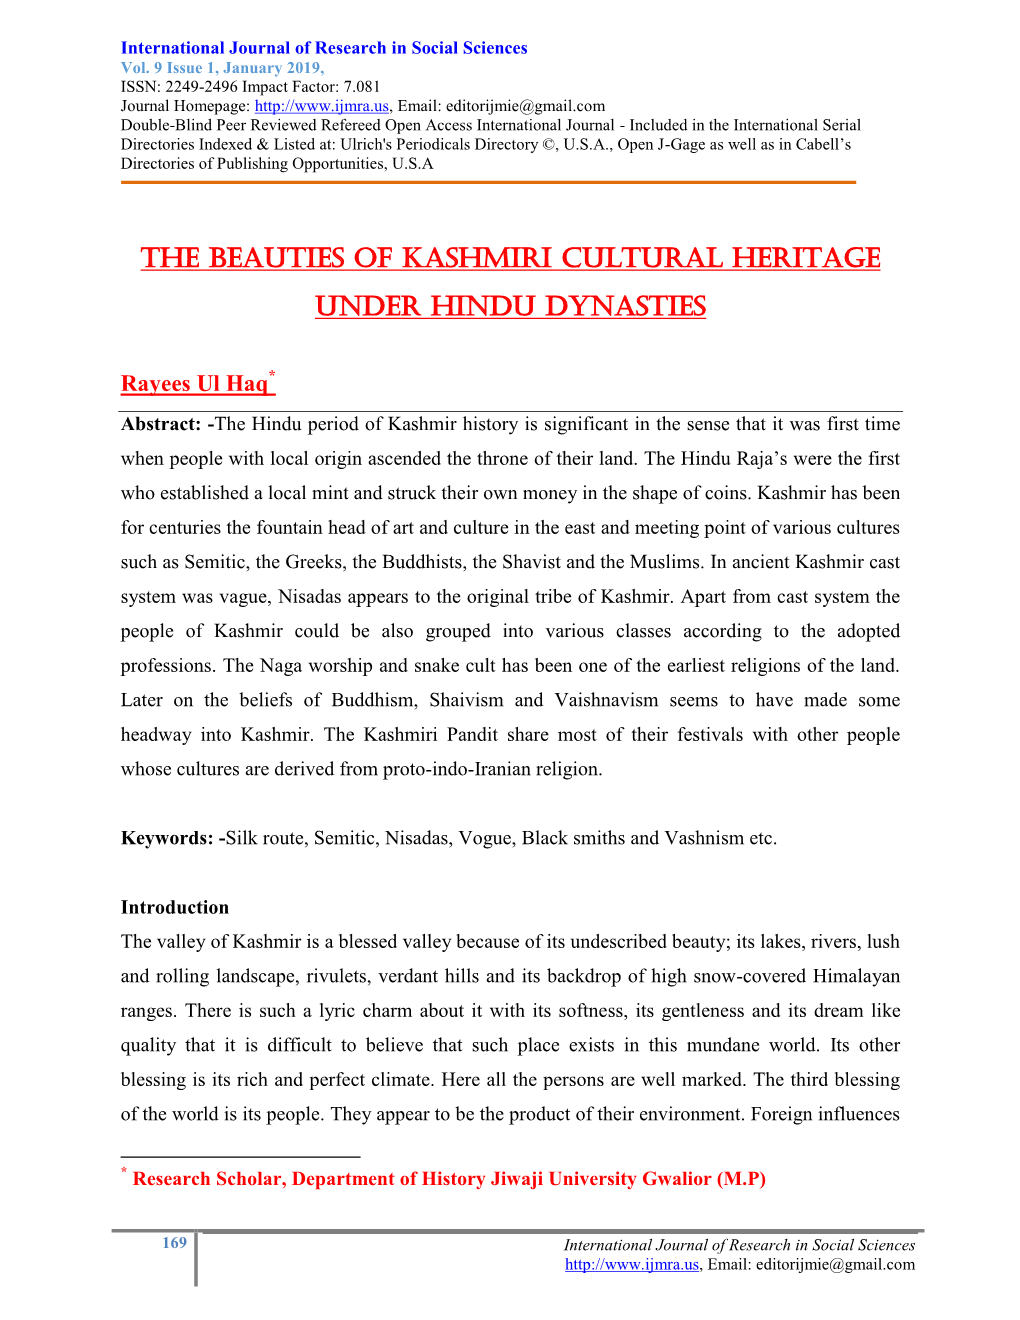 The Beauties of Kashmiri Cultural Heritage Under Hindu Dynasties